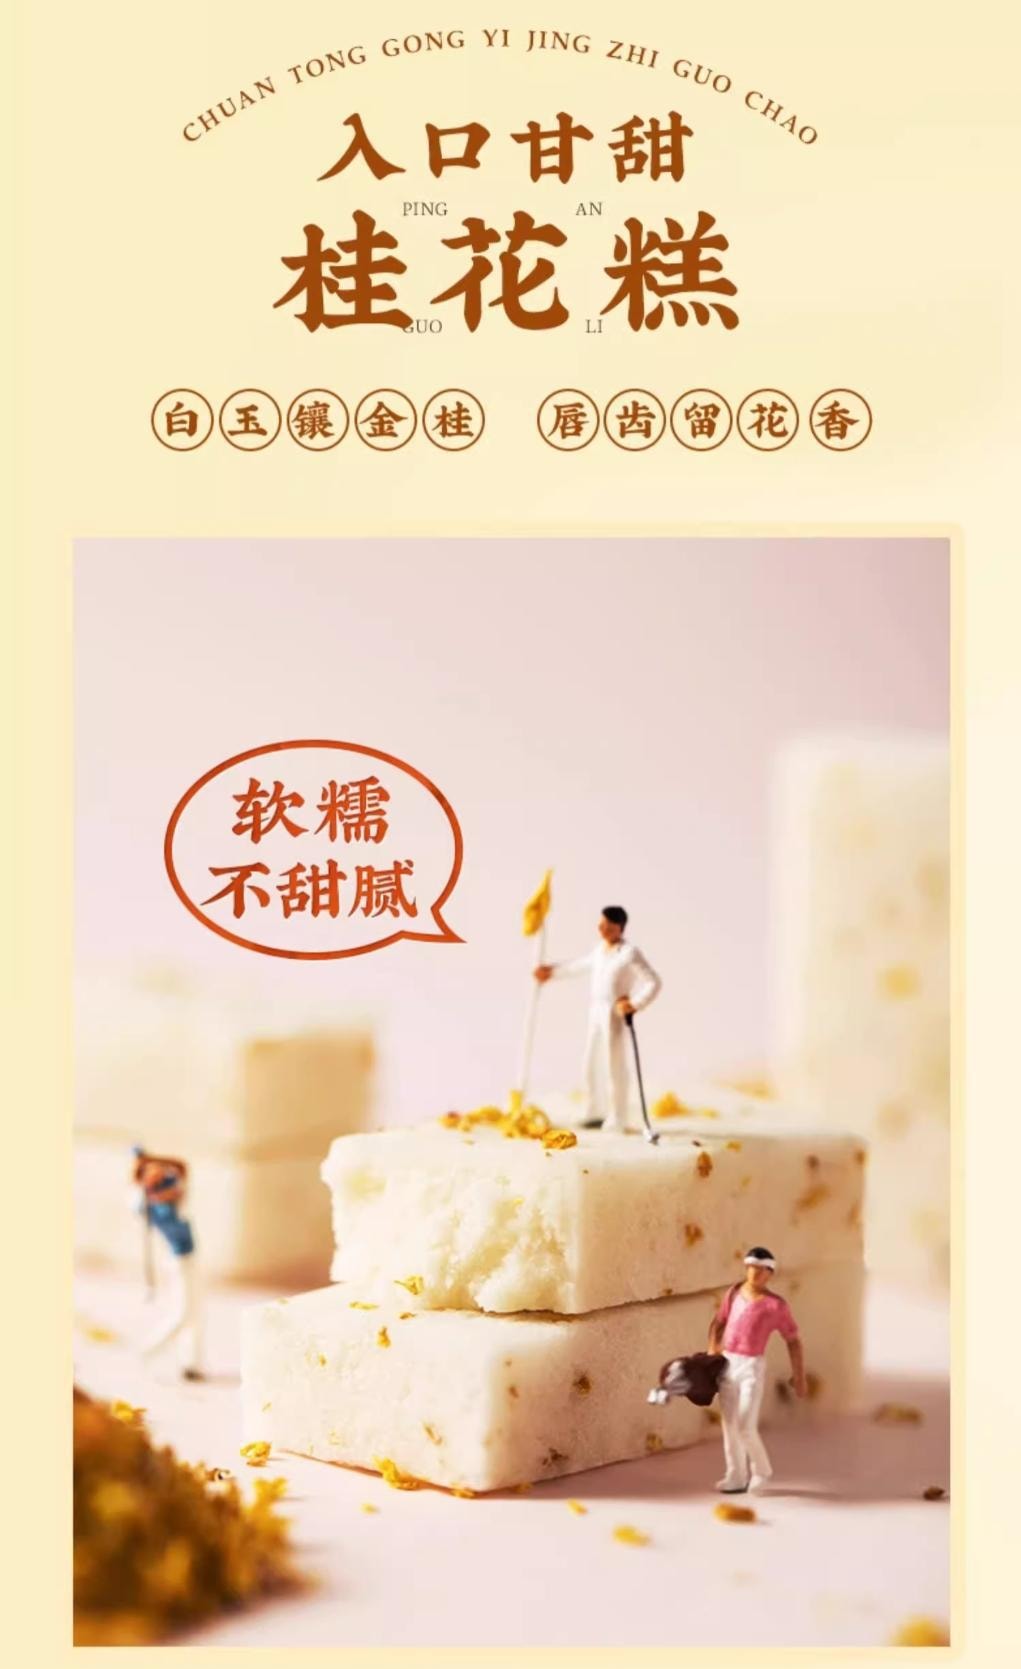 【中国直邮】SHENDACHENG 沈大成 桂花糕 320g 米糕糯米糕 中华老字号 上海特产 传统点心